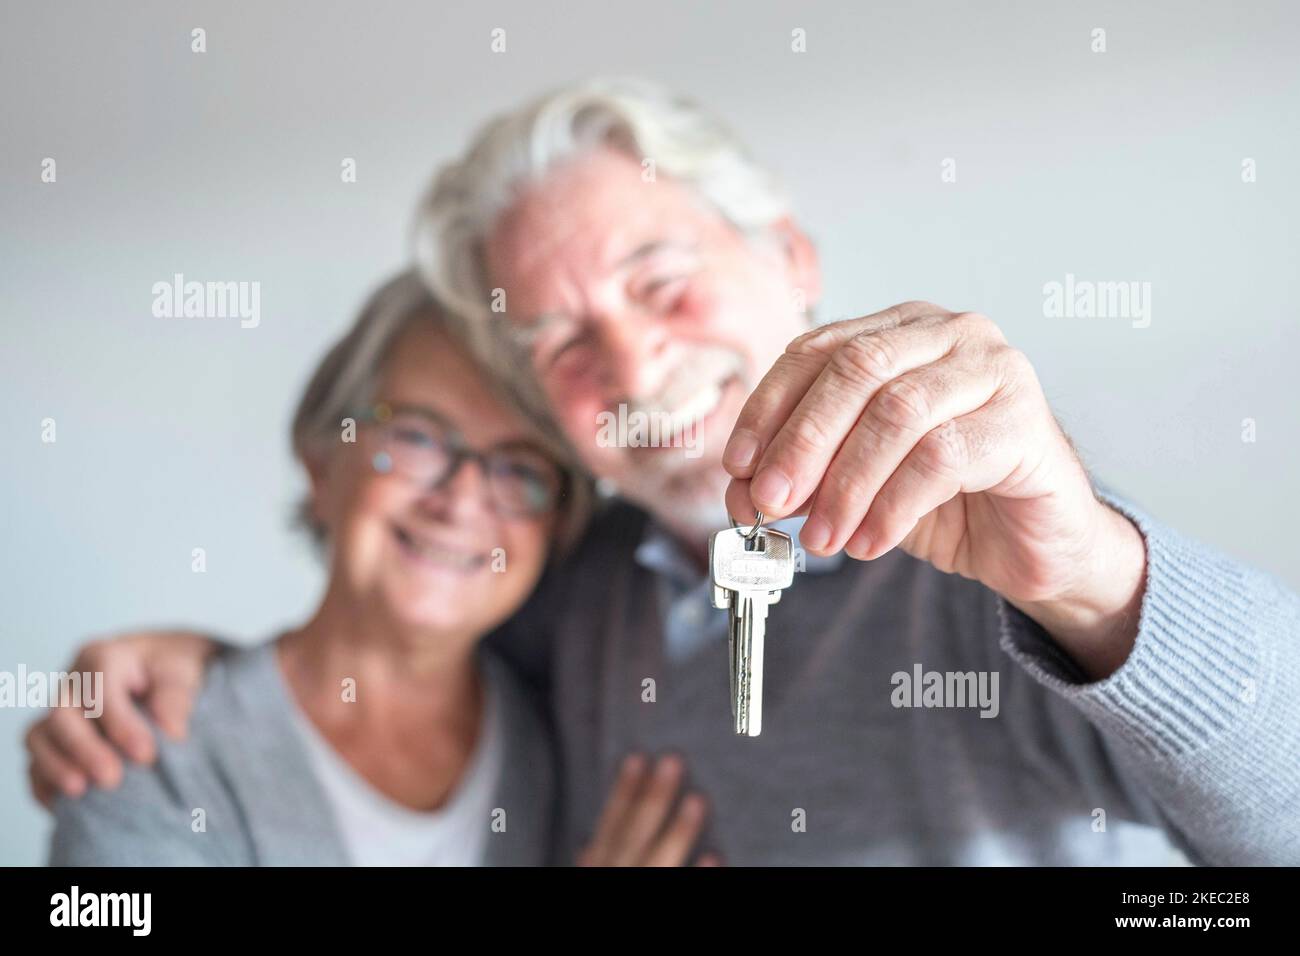 coppia di due anziani dopo l'acquisto di una nuova casa o auto e andare a vivere insieme - uomo che tiene una chiave e maturo uomo e donna che lo guarda Foto Stock